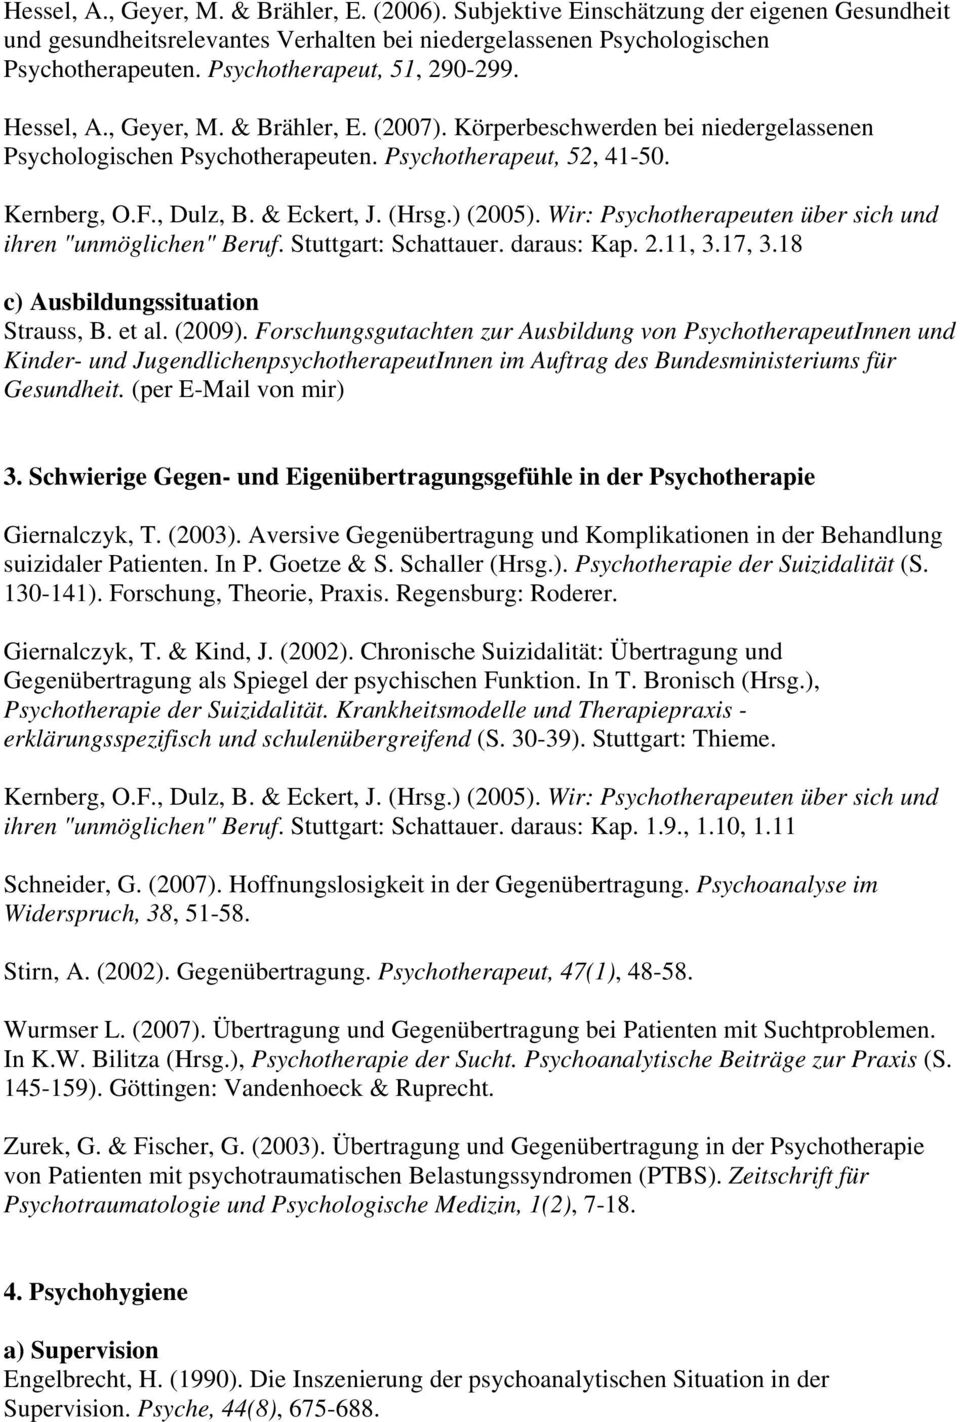 ihren "unmöglichen" Beruf. Stuttgart: Schattauer. daraus: Kap. 2.11, 3.17, 3.18 c) Ausbildungssituation Strauss, B. et al. (2009).